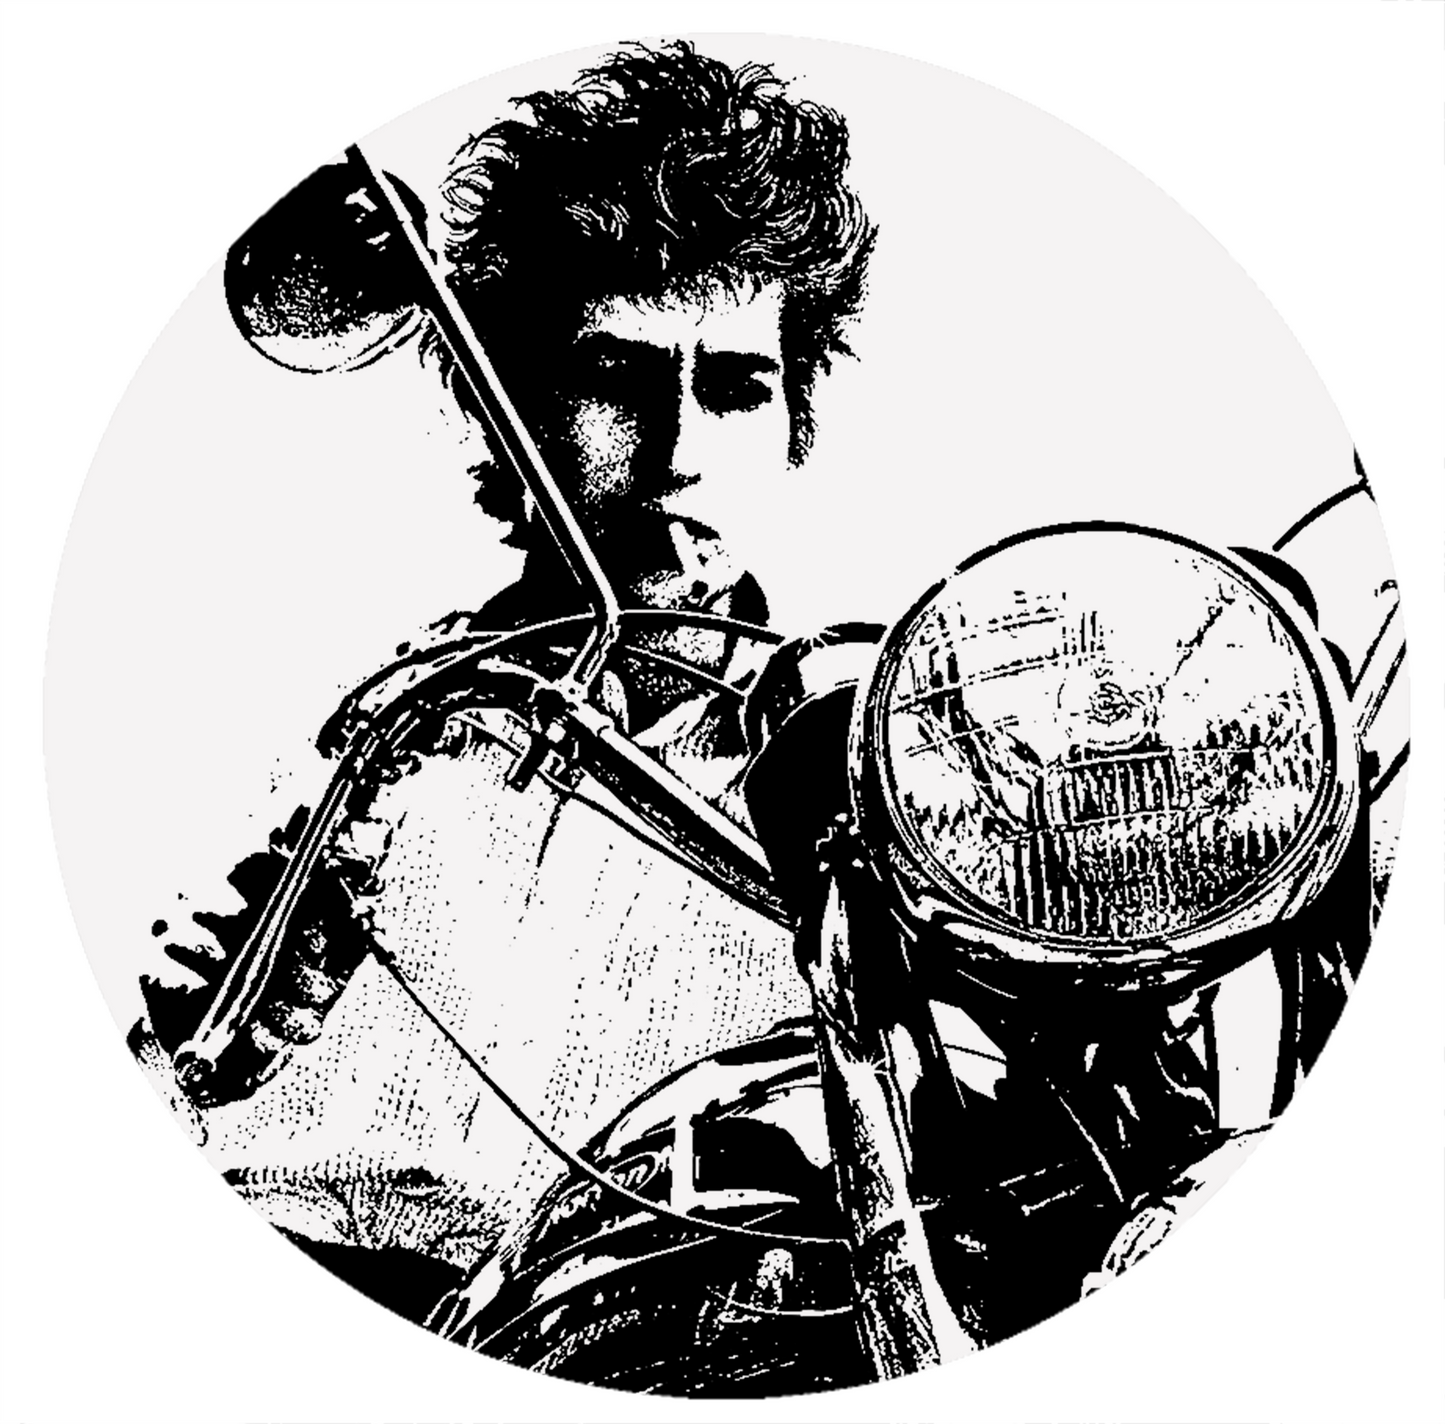 Bob Dylan - Motorbike